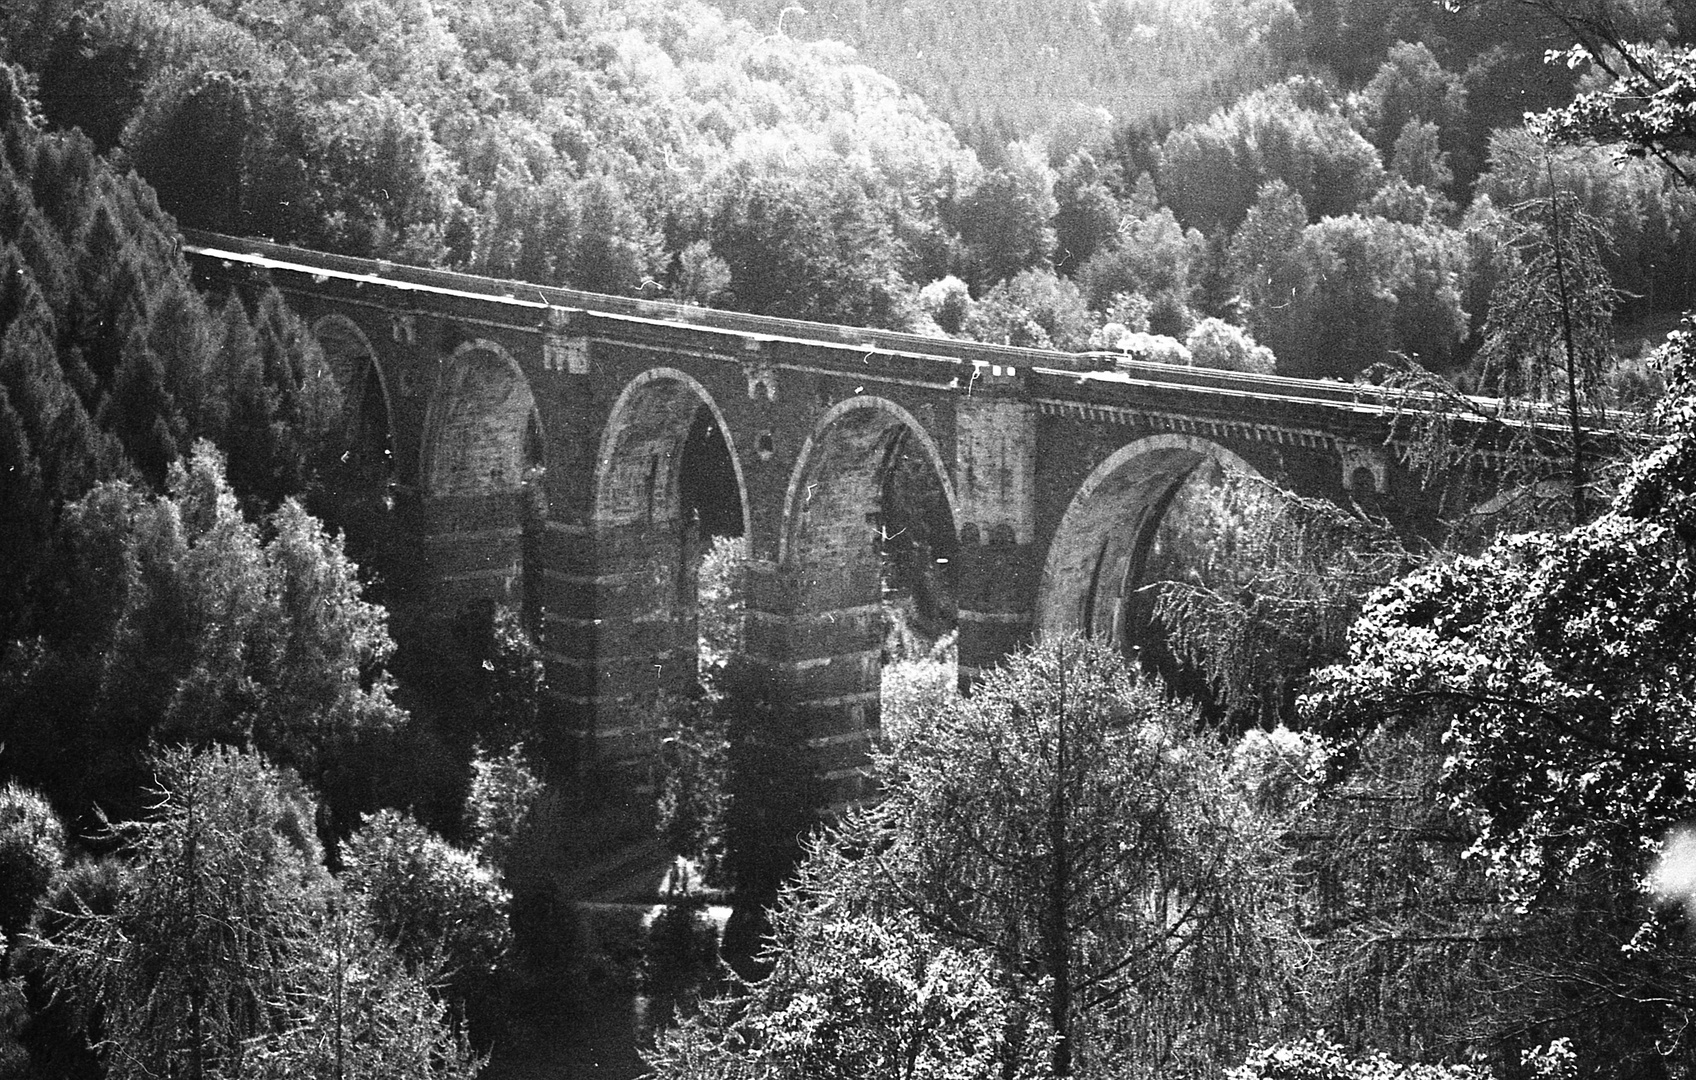 Eisenbahnviadukt Hetzdorf von der Bastei aus gesehen